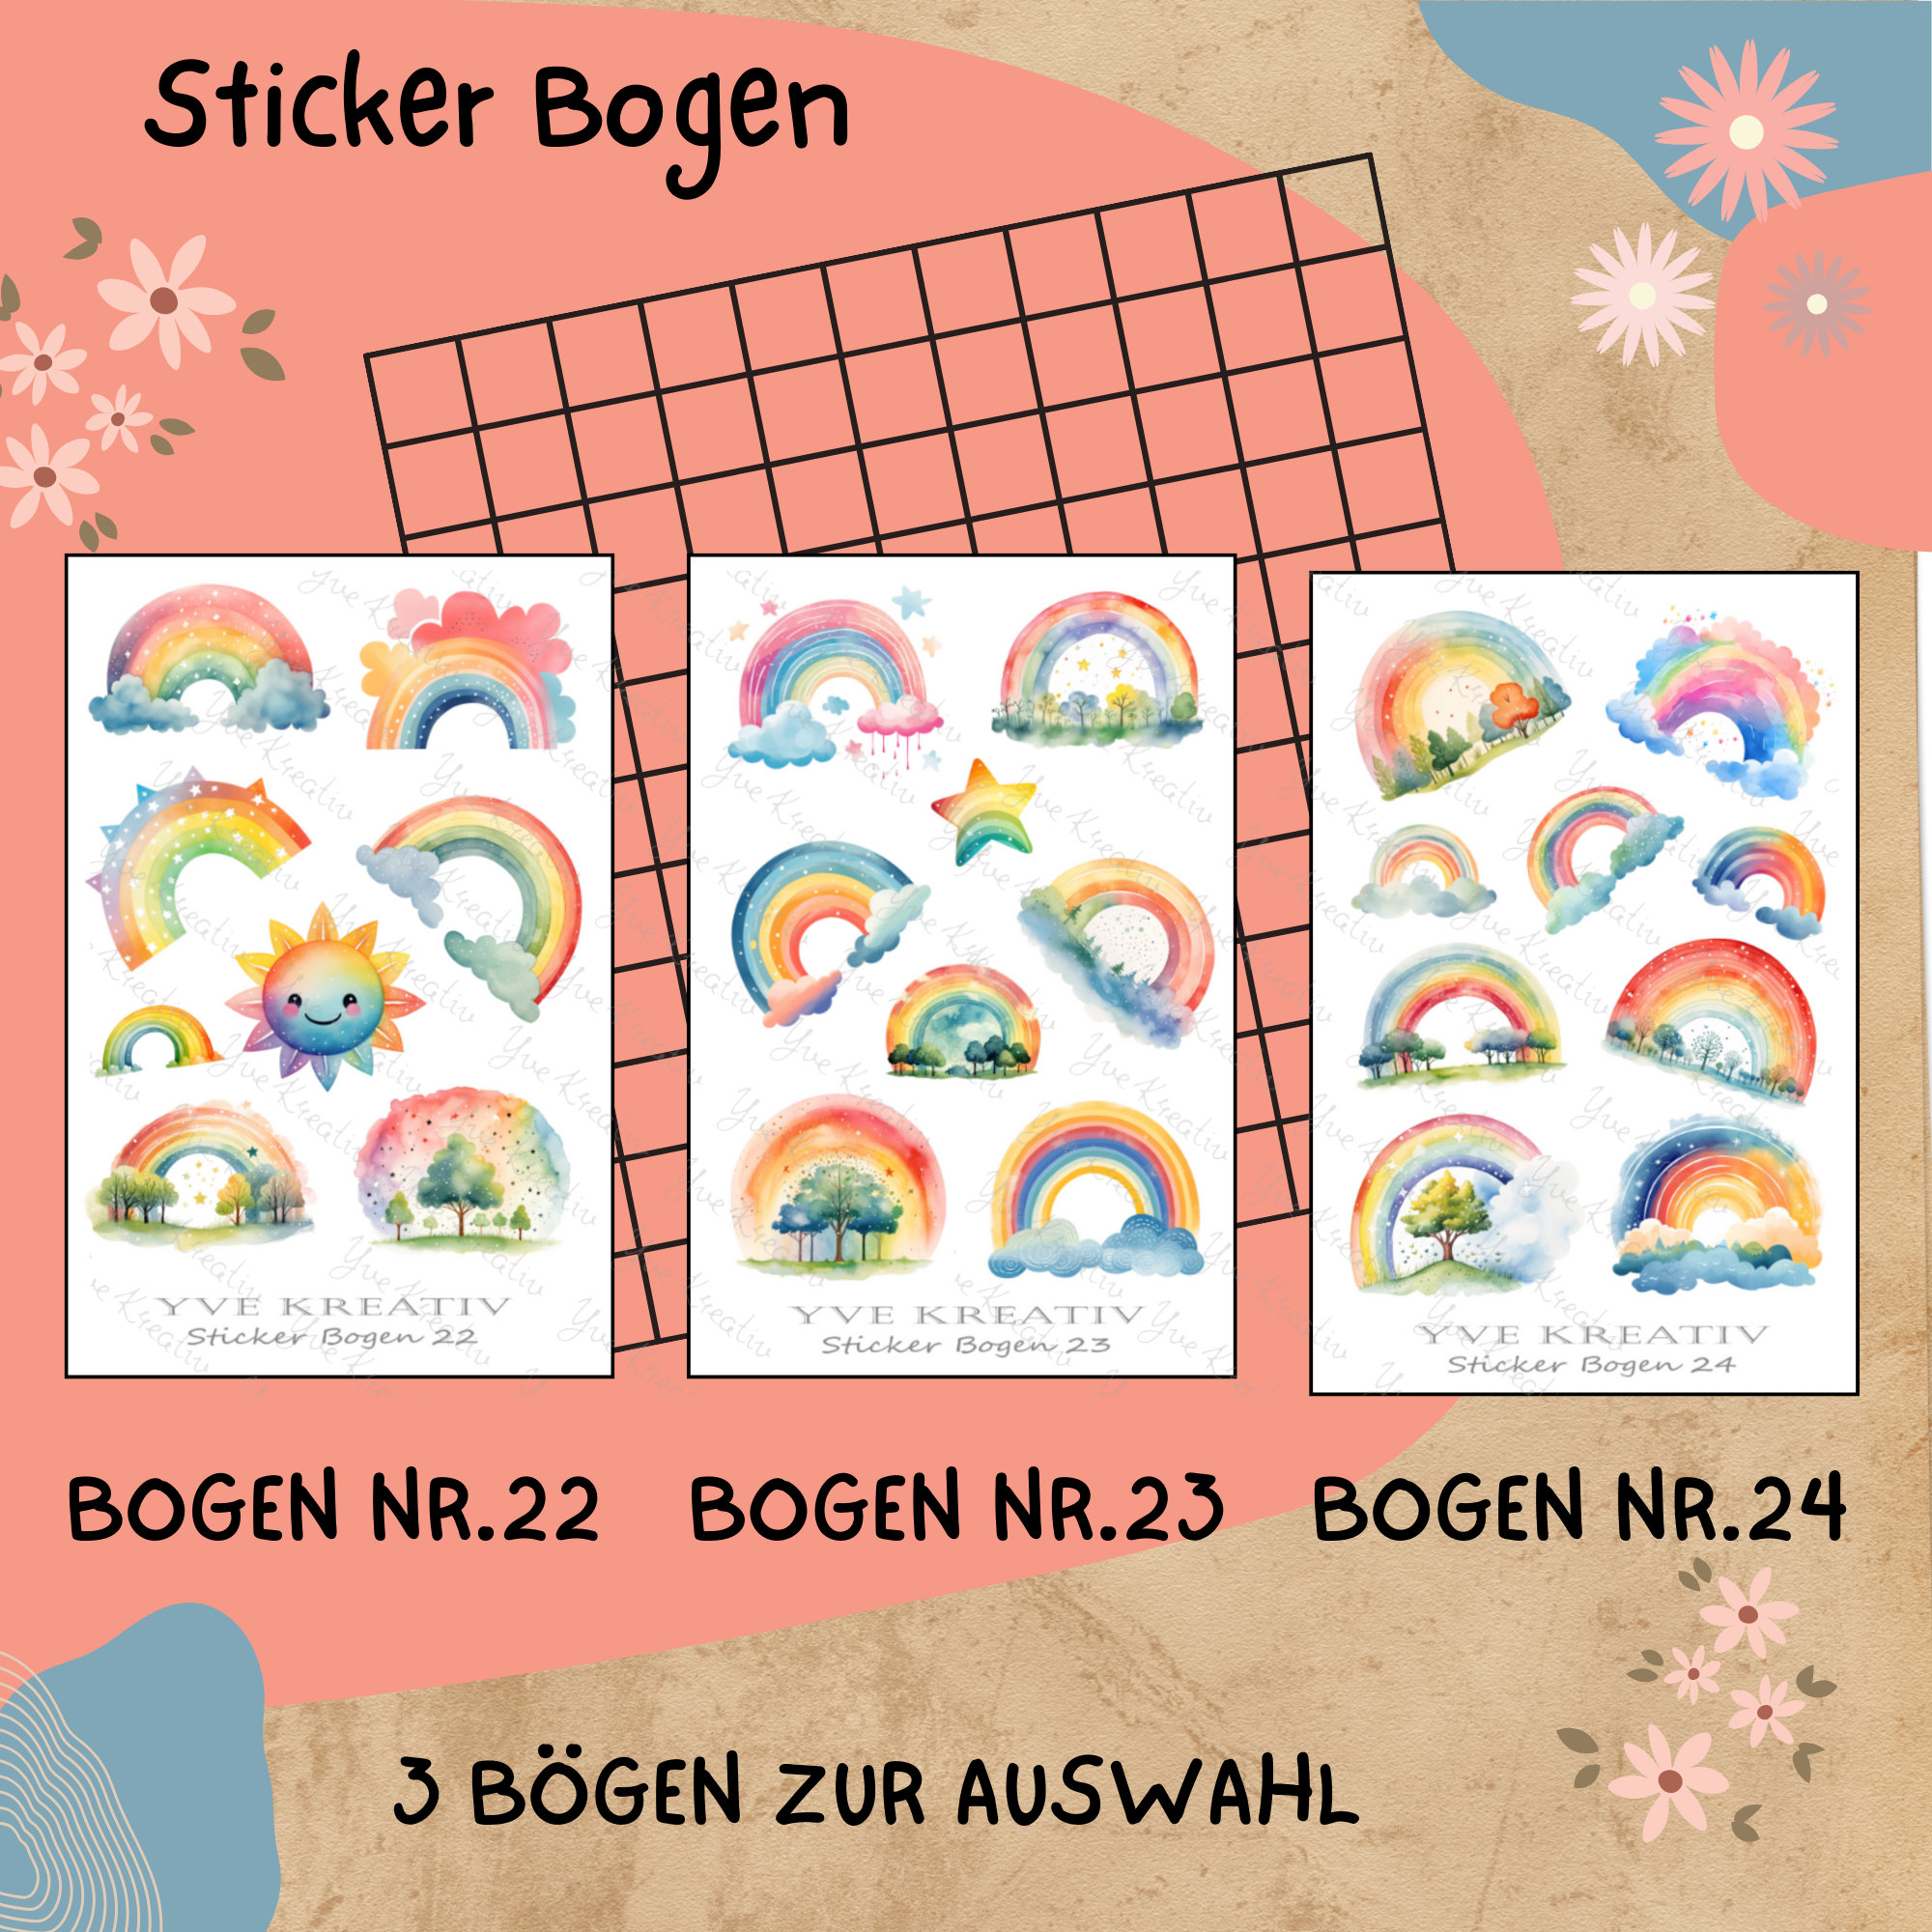 Sticker Bogen " Regenbogen kunterbunt" | Sticker Set - Aufkleber 3 Stickerbogen zur Auswahl in Weiß - Transparent - Matt - Glanz